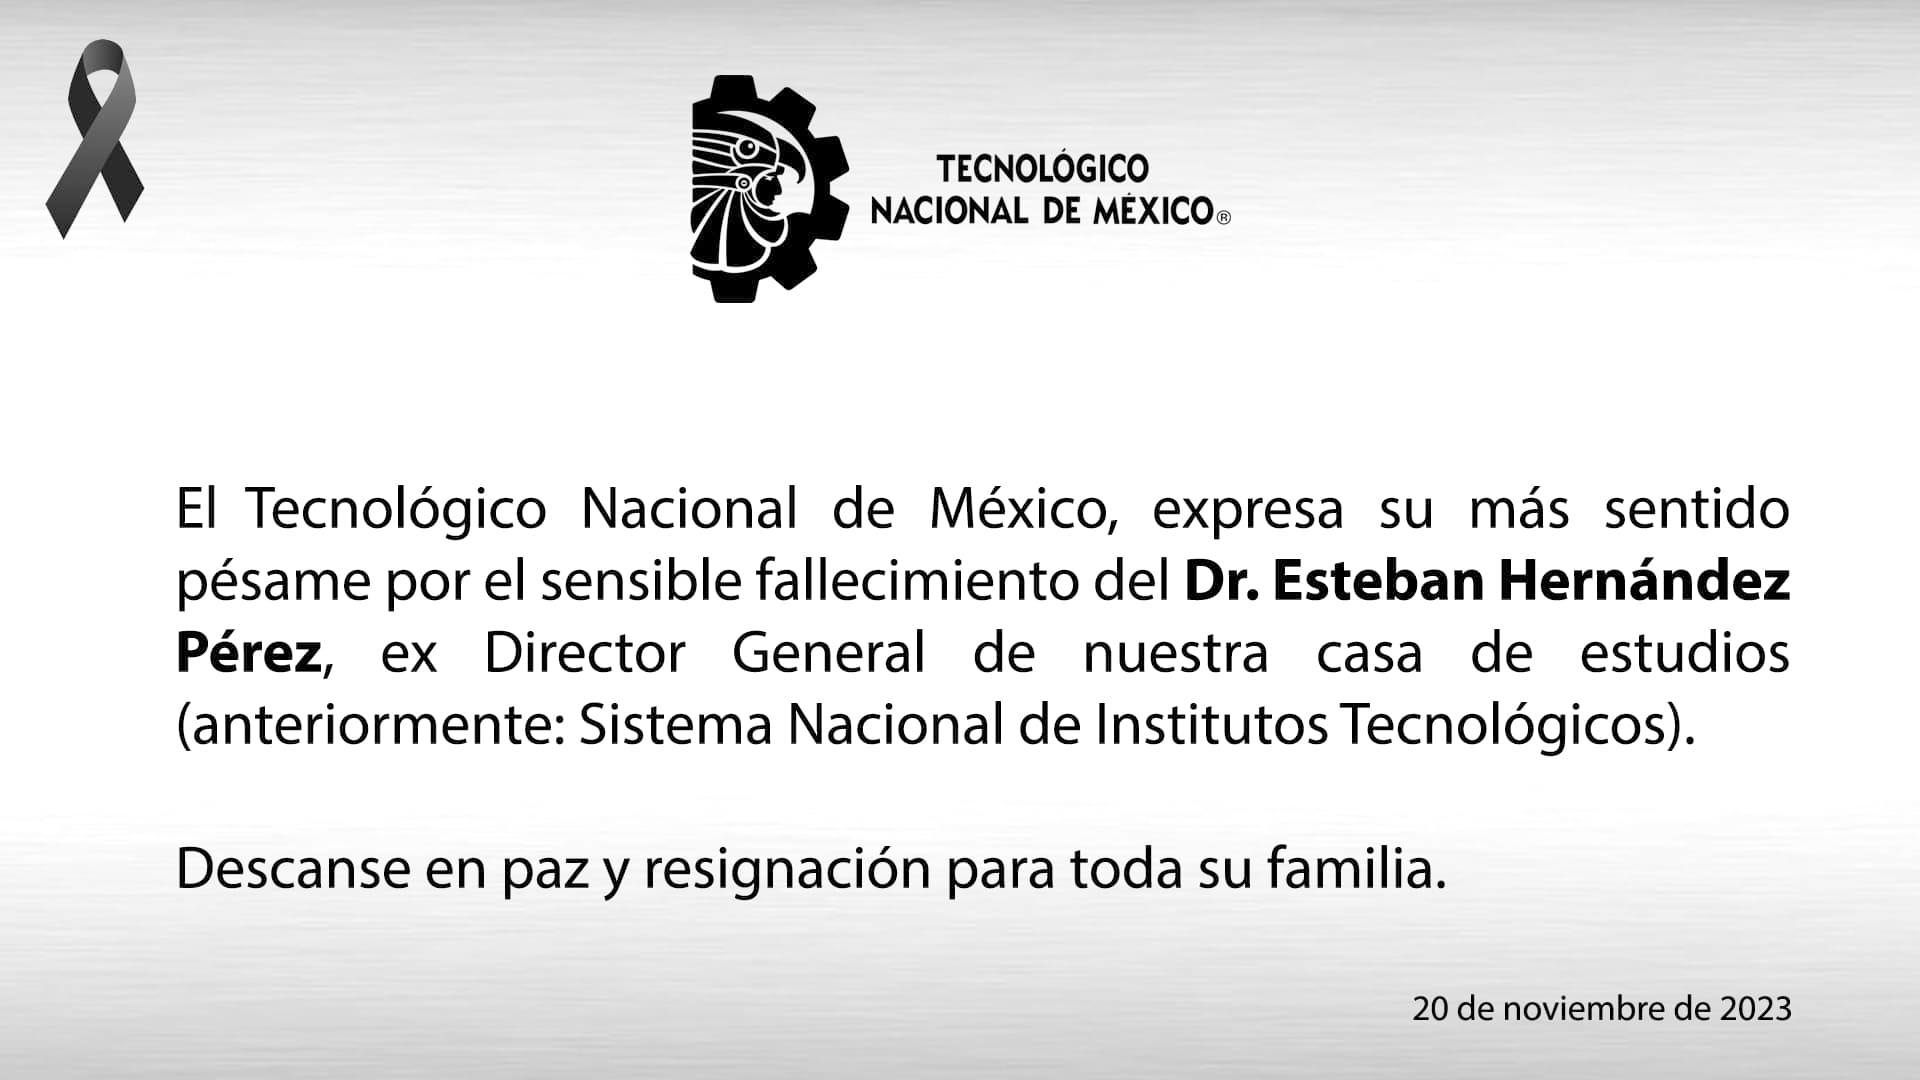 El Tecnológico Nacional de México, expresa su más sentido pésame por el sensible fallecimiento del Dr. Esteban Hernández Pérez